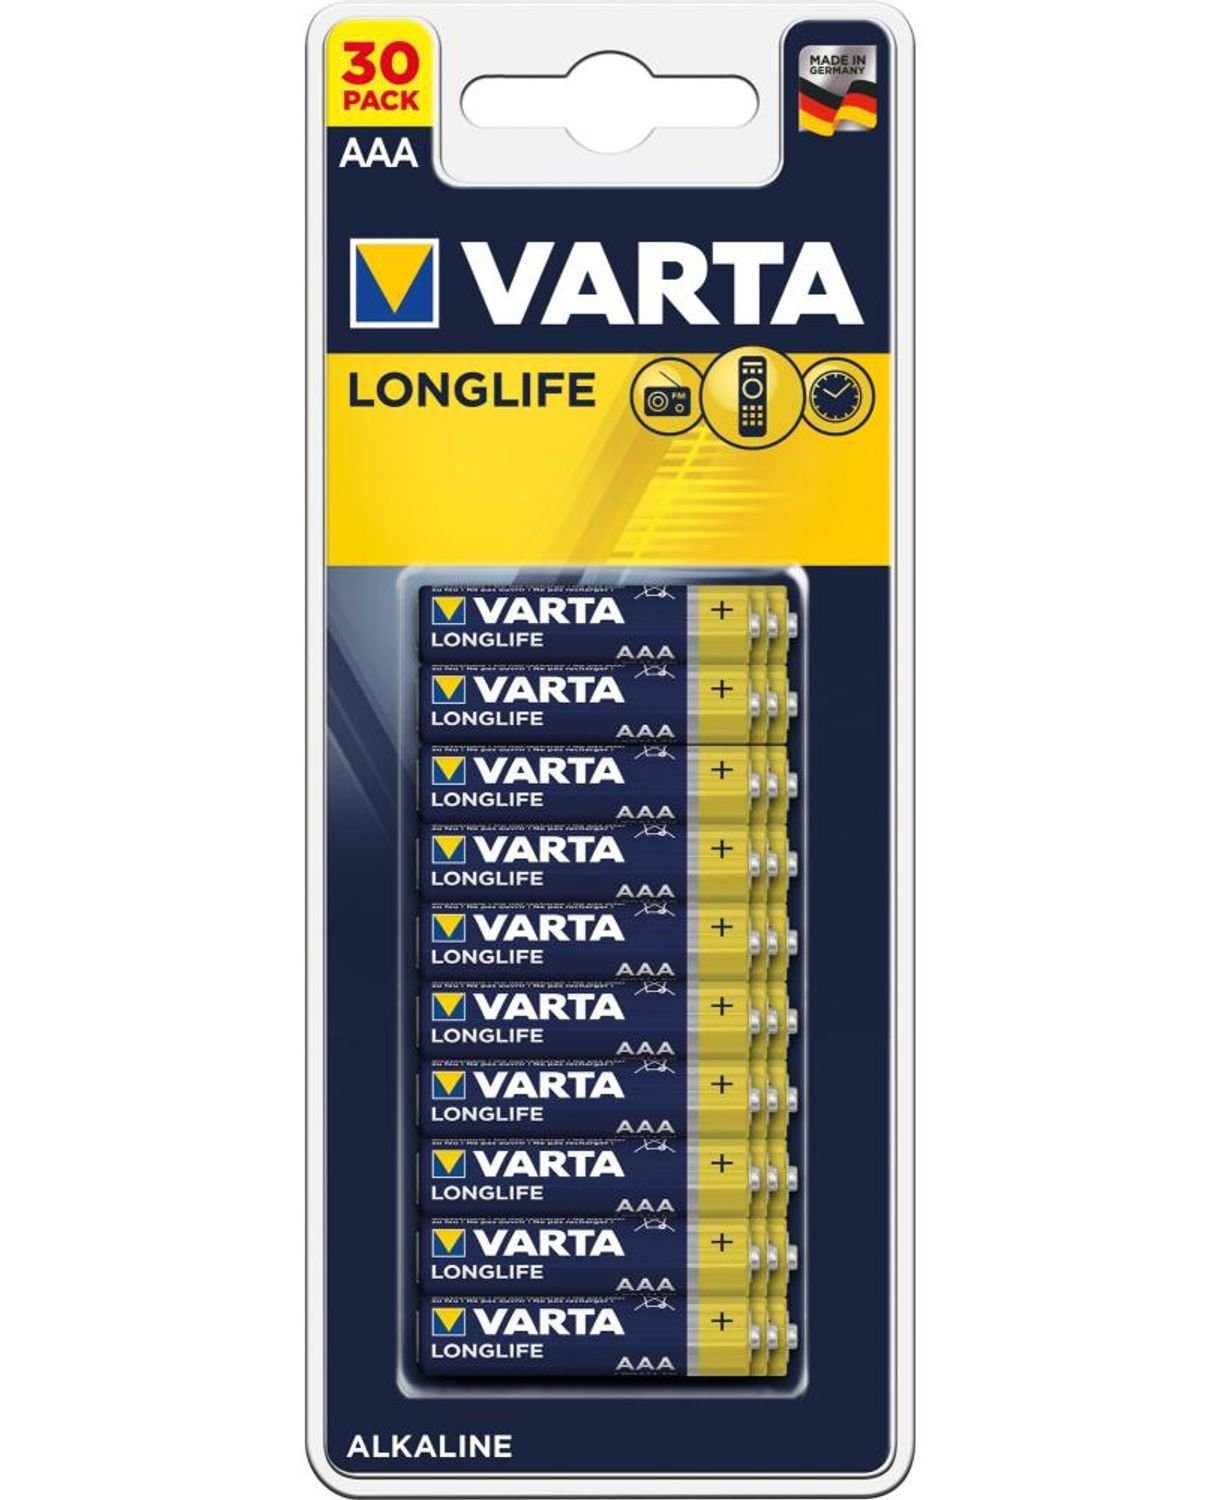 VARTA 12x 30er-Packung LongLife Alkaline Batterien LR03 AAA 1,5V Großpackung Batterie, (360 St)